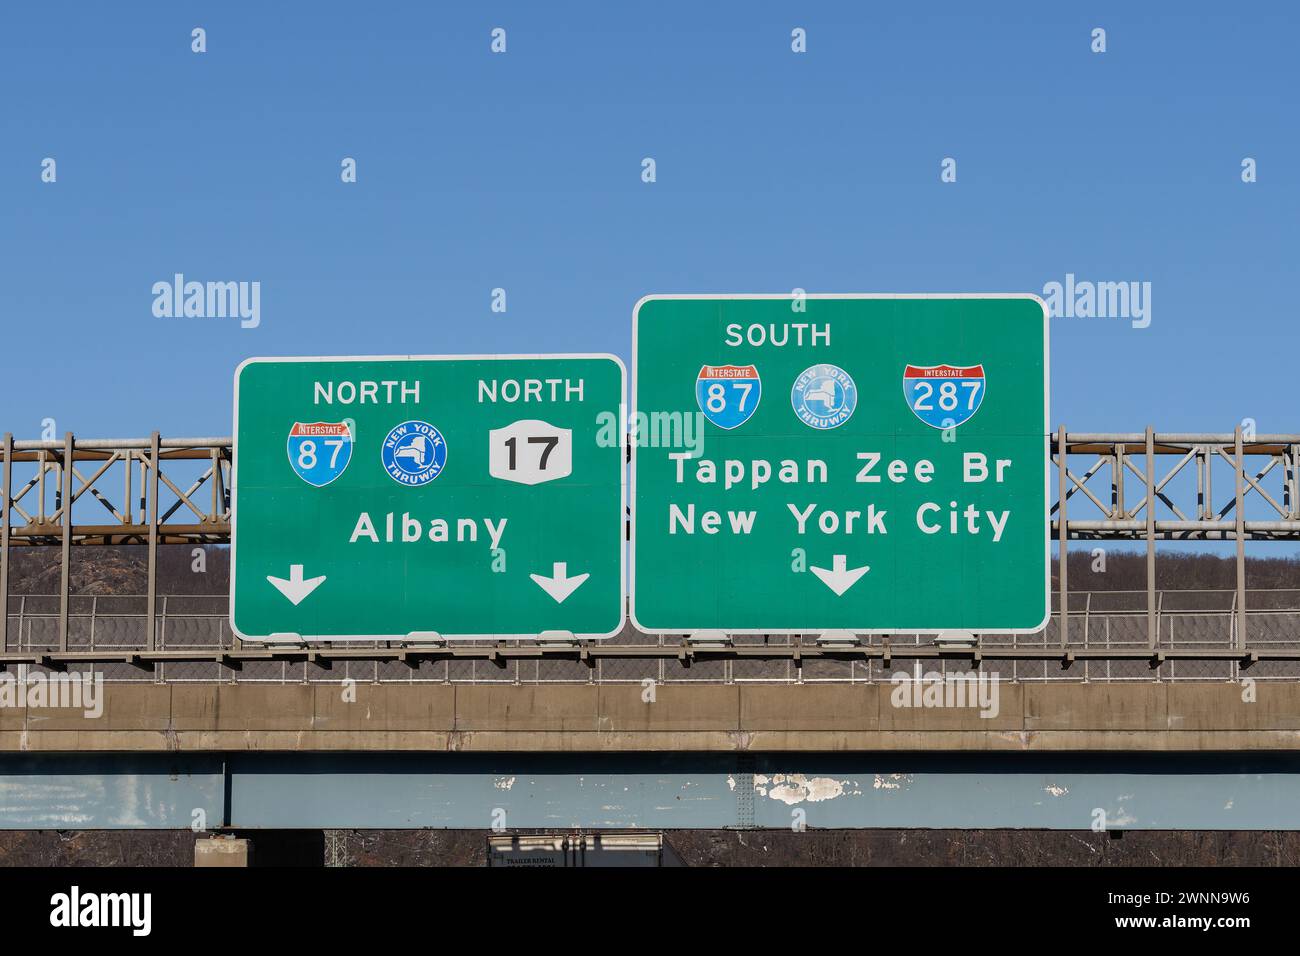 Mahwah, NJ - 27 février 2022 : panneaux de sortie sur l'I-287, NJ-17 pour l'I-87 New York State Thruway North vers Albany, et South vers Tappan Zee Bridge, alias G. Banque D'Images